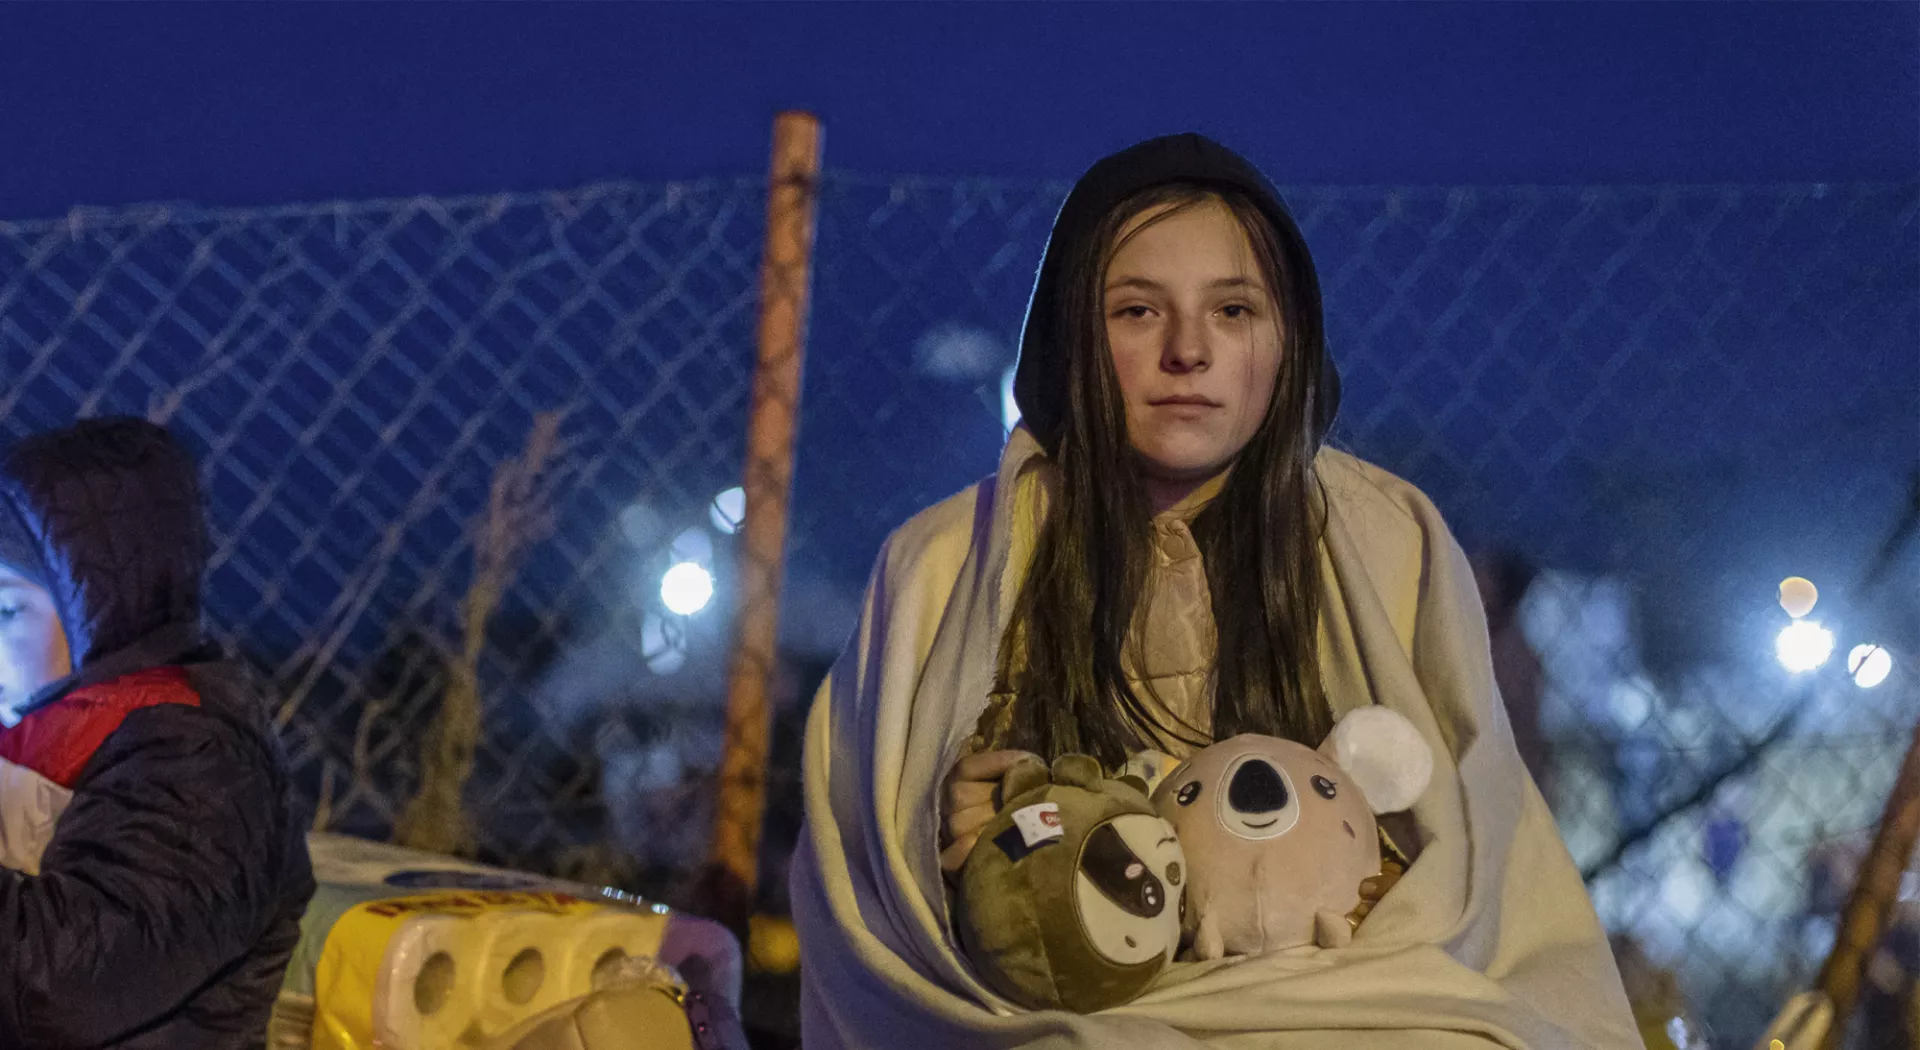 Kein Raum für Flüchtlinge: Mädchen aus der Ukraine sitzt eingehüllt in eine Decke in der Kälte